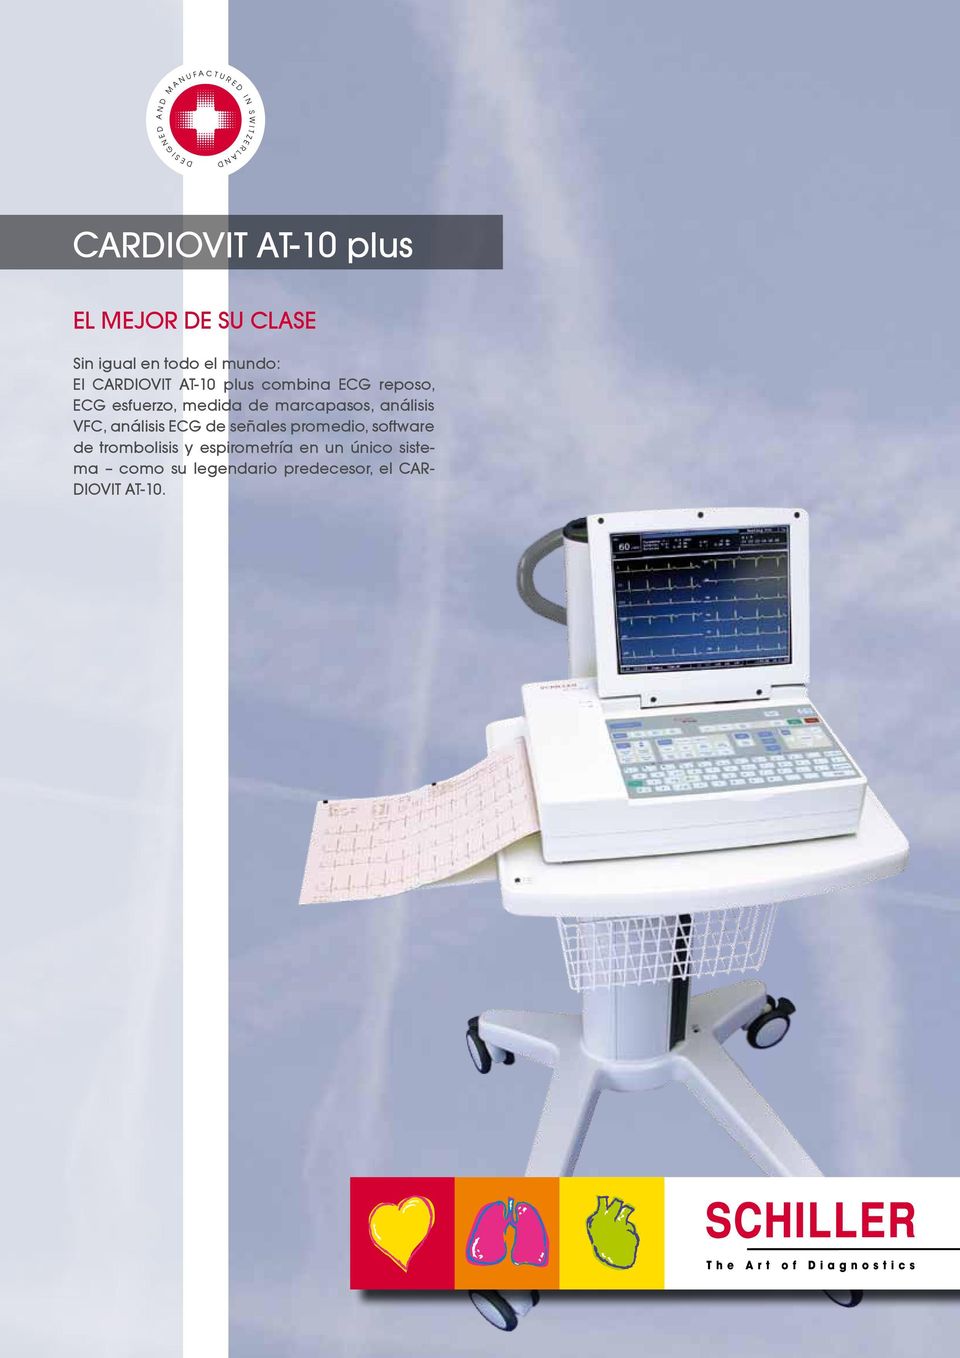 mundo: l CARDIOVIT AT-10 plus combina CG reposo, CG esfuerzo, medida de marcapasos, análisis VFC, análisis CG de